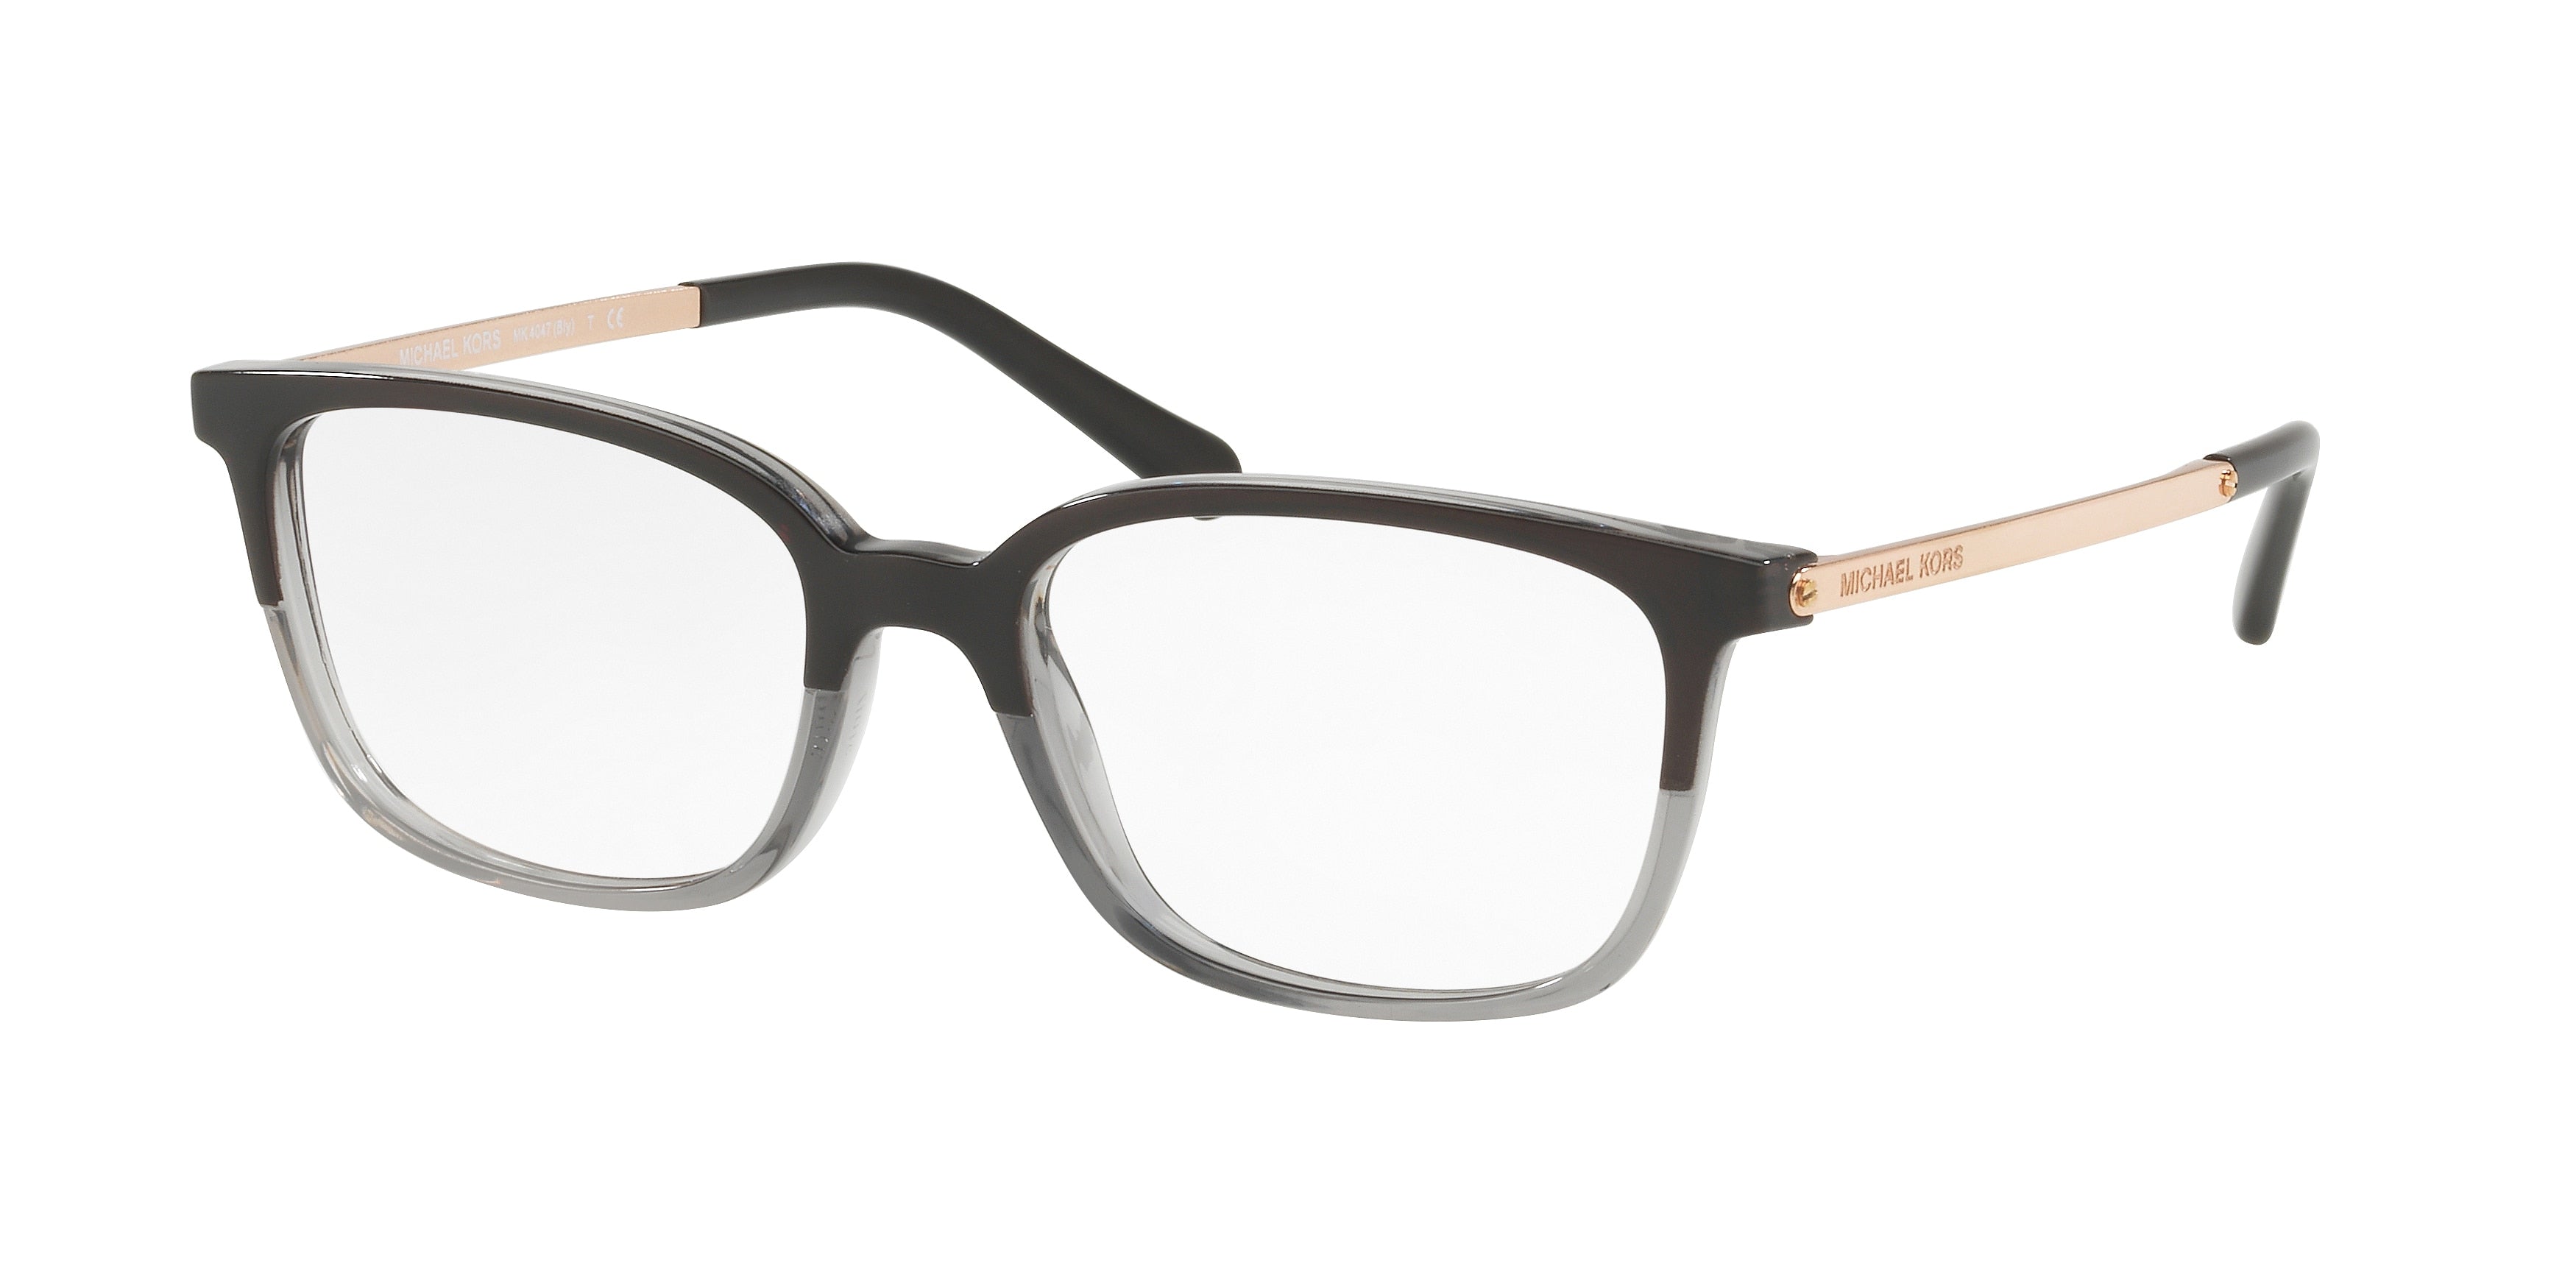 Michael Kors BLY MK4047 Rectangle Eyeglasses  3280-Black/Transparent Grey 53-135-17 - Color Map Black